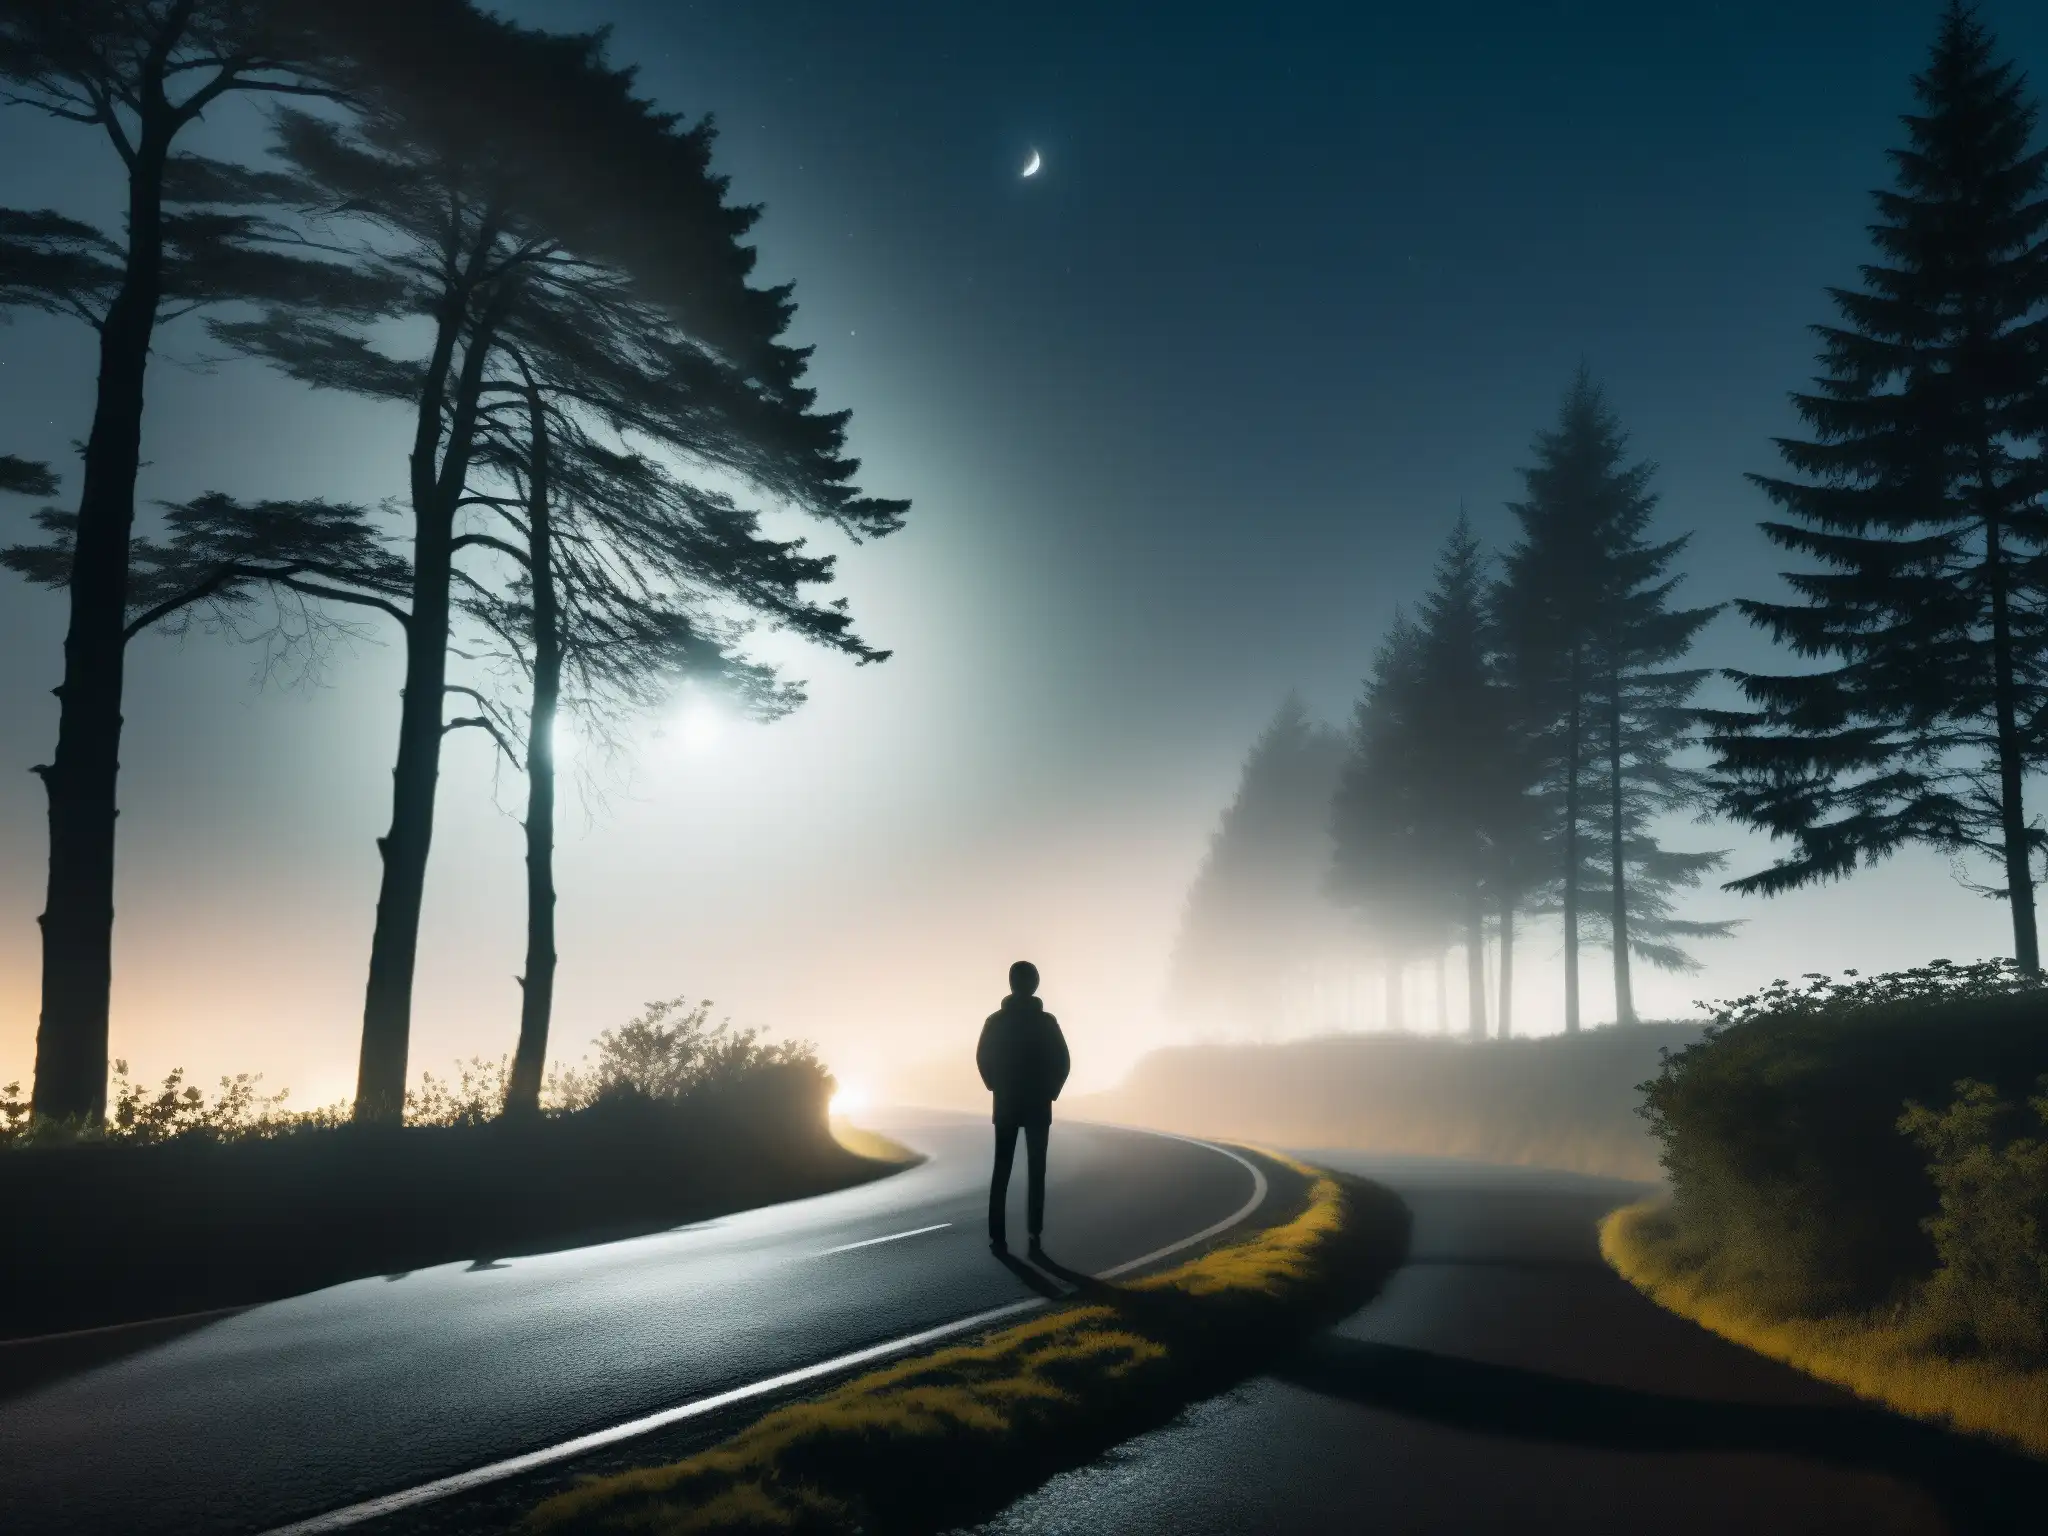 Silueta en la noche de El Secreto de la Mujer de la Curva, observando luces de auto en un camino neblinoso entre árboles sombríos